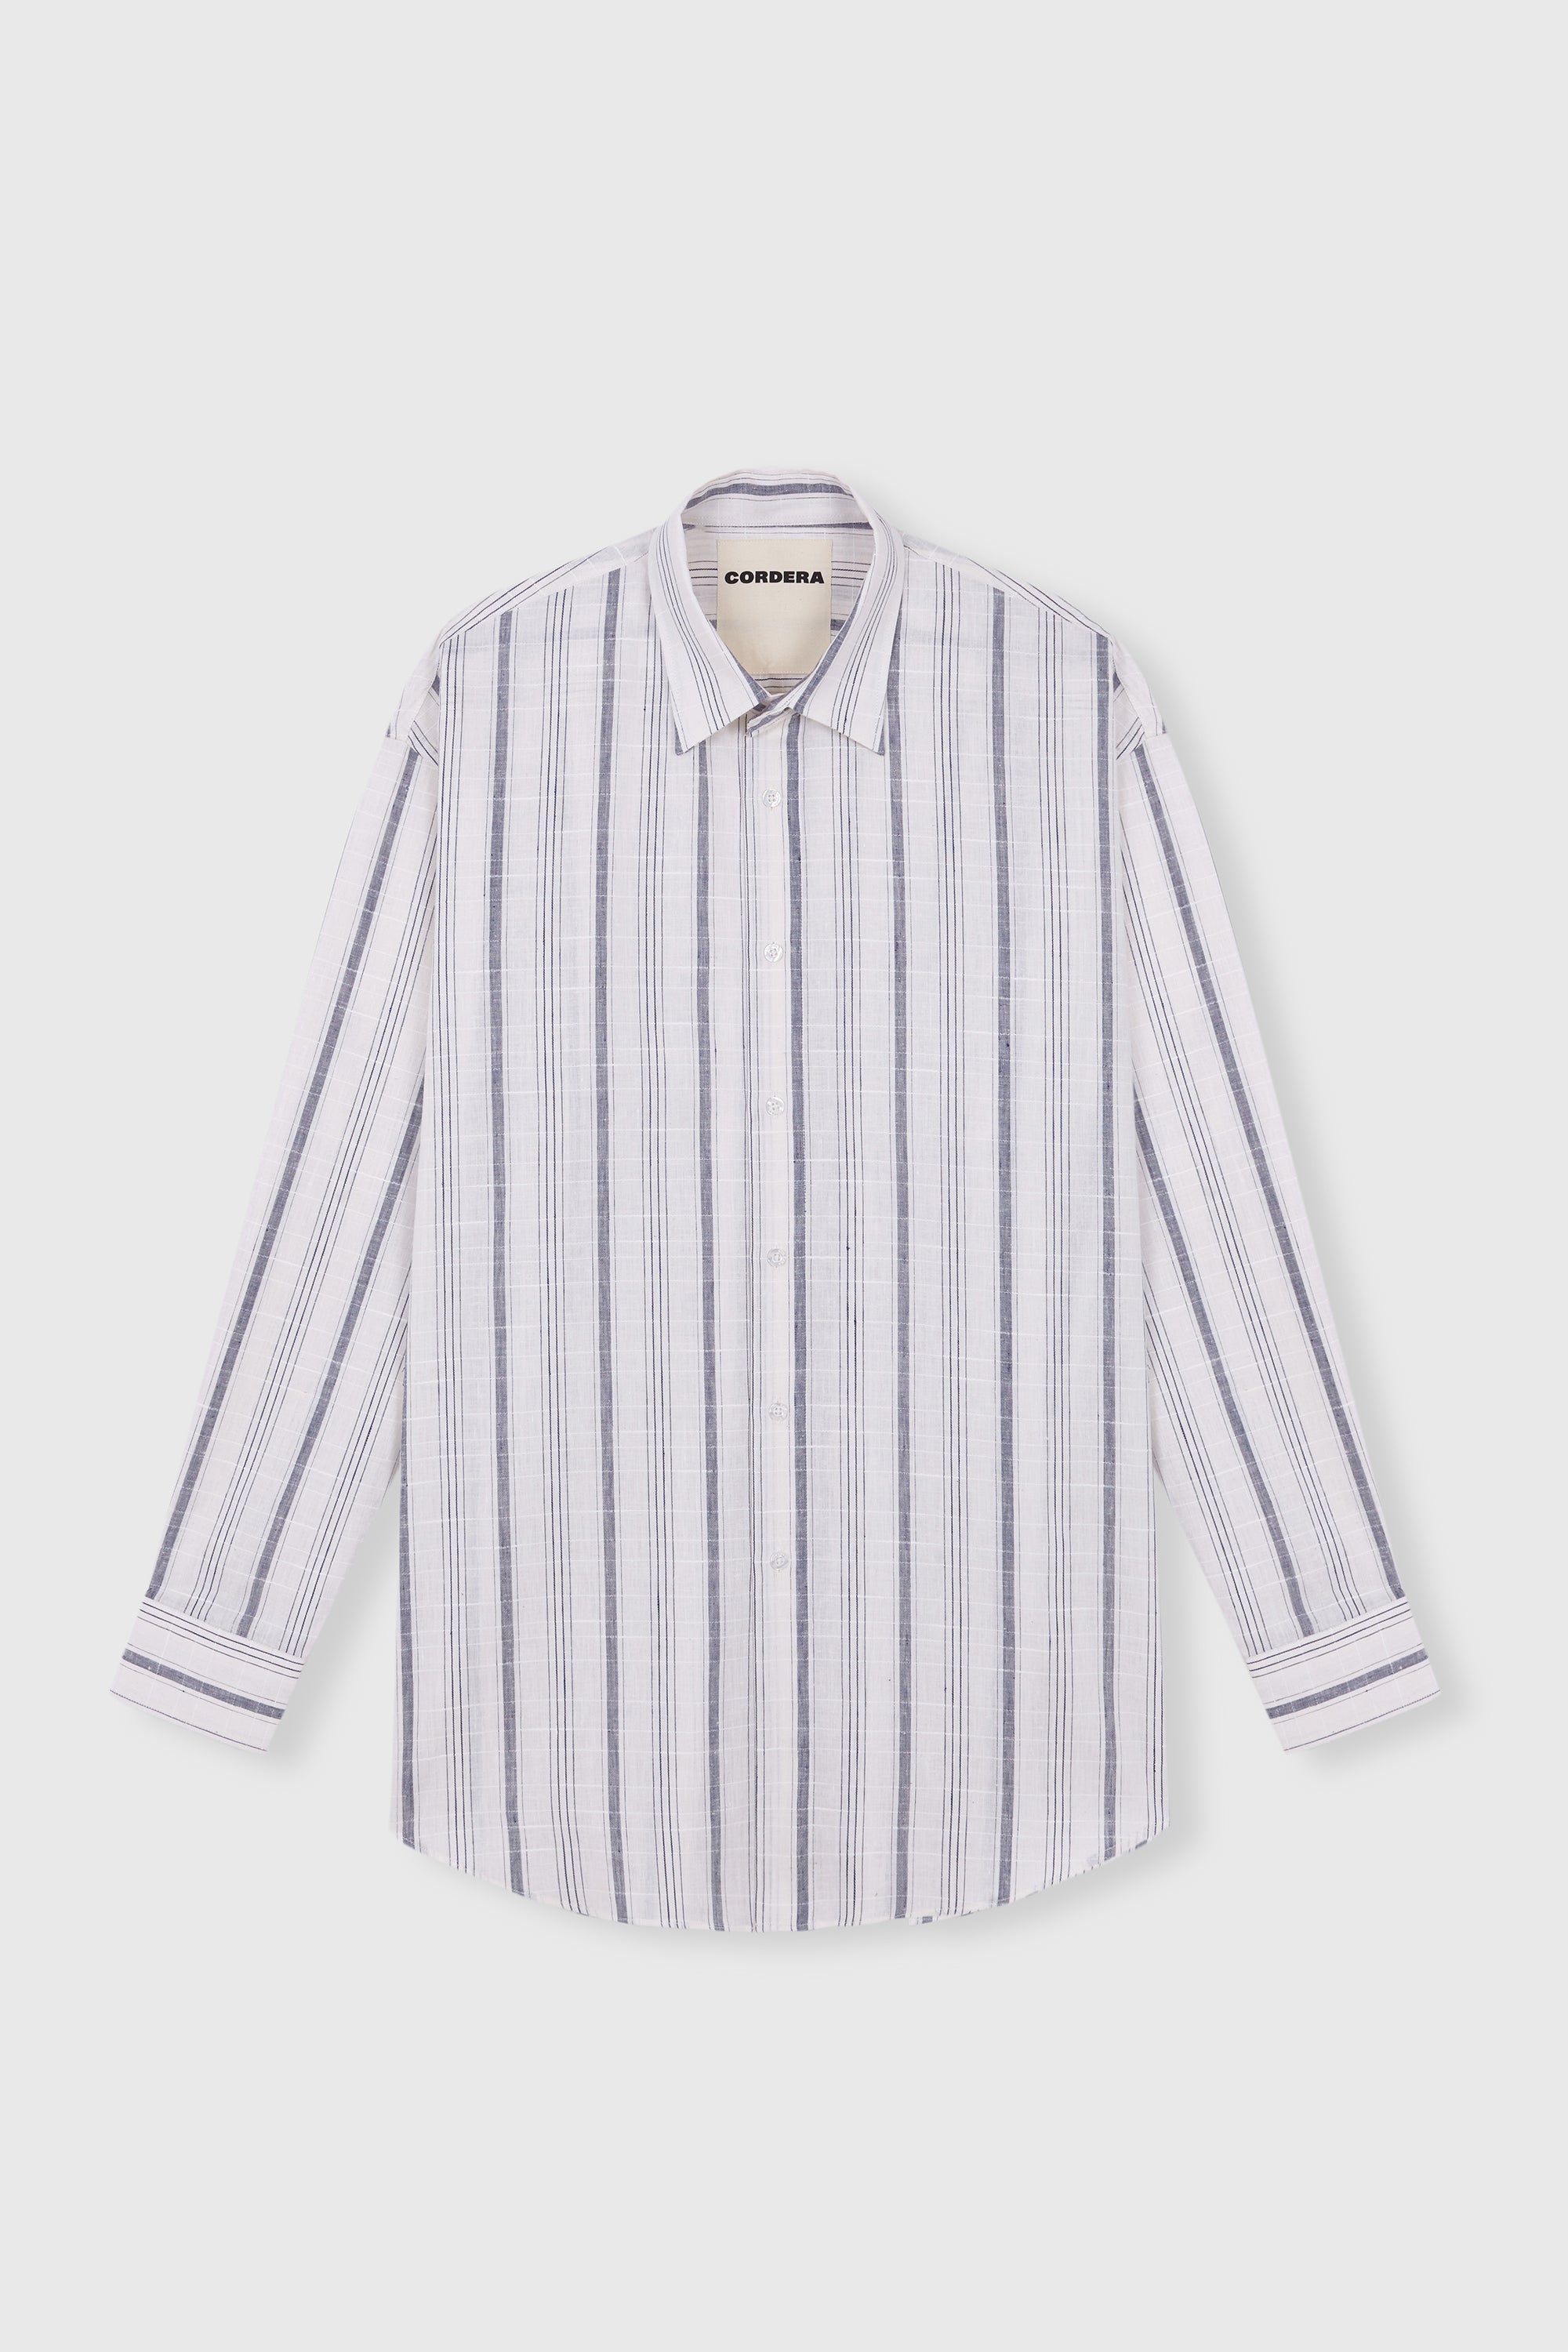 Cordera Striped Indigo Man Shirt Checkered